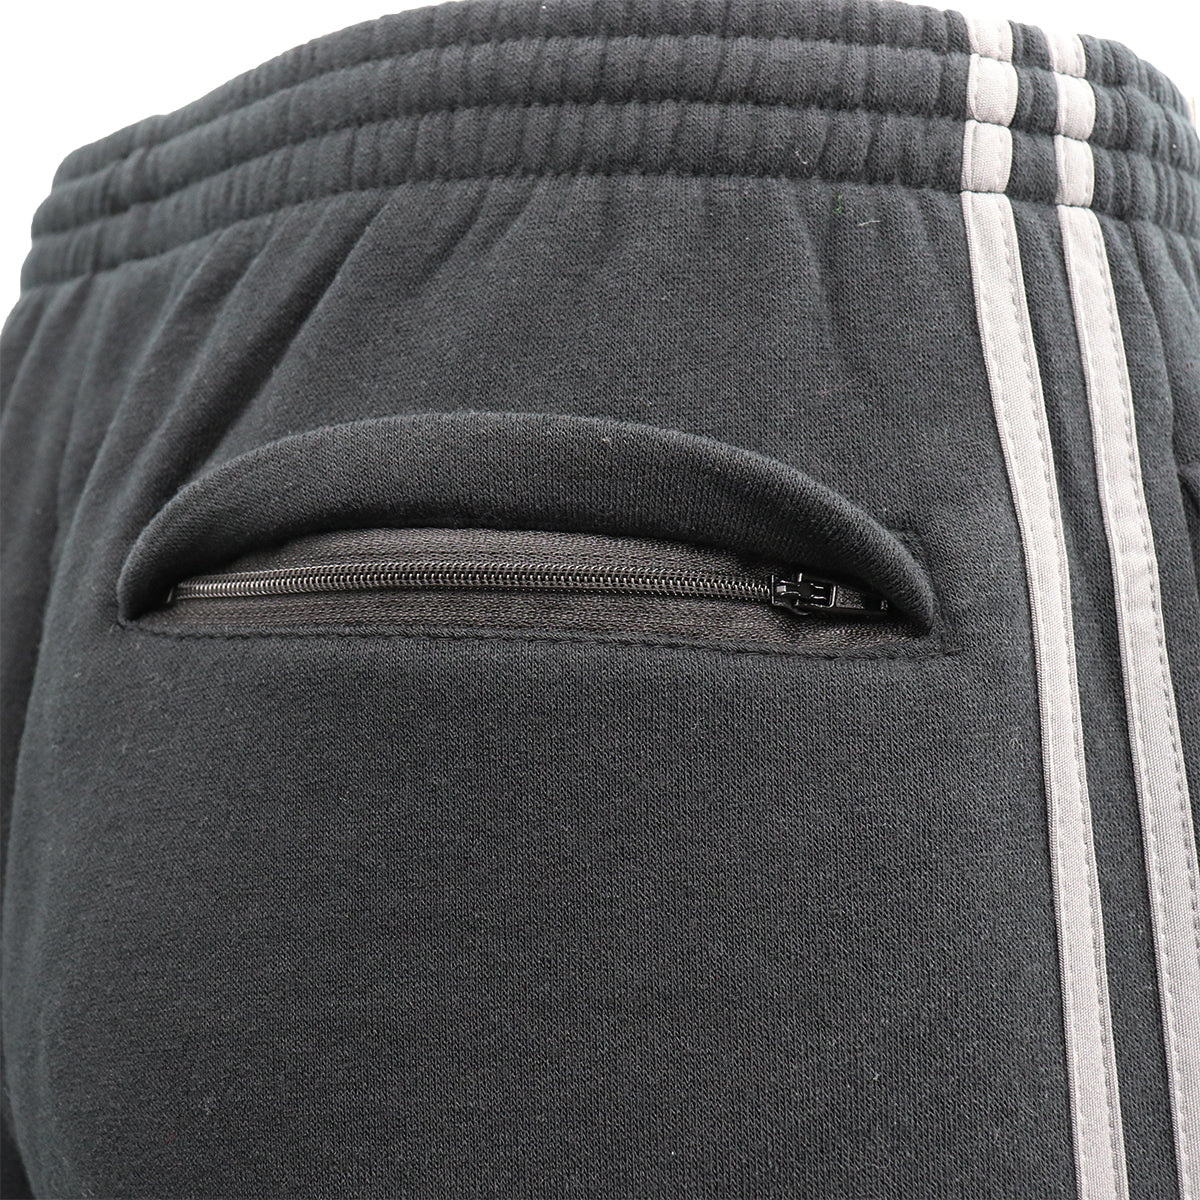 Men's Fleece Casual Sports Track Pants w Zip Pocket Striped Sweat Trousers S-6XL, Light Grey, 4XL